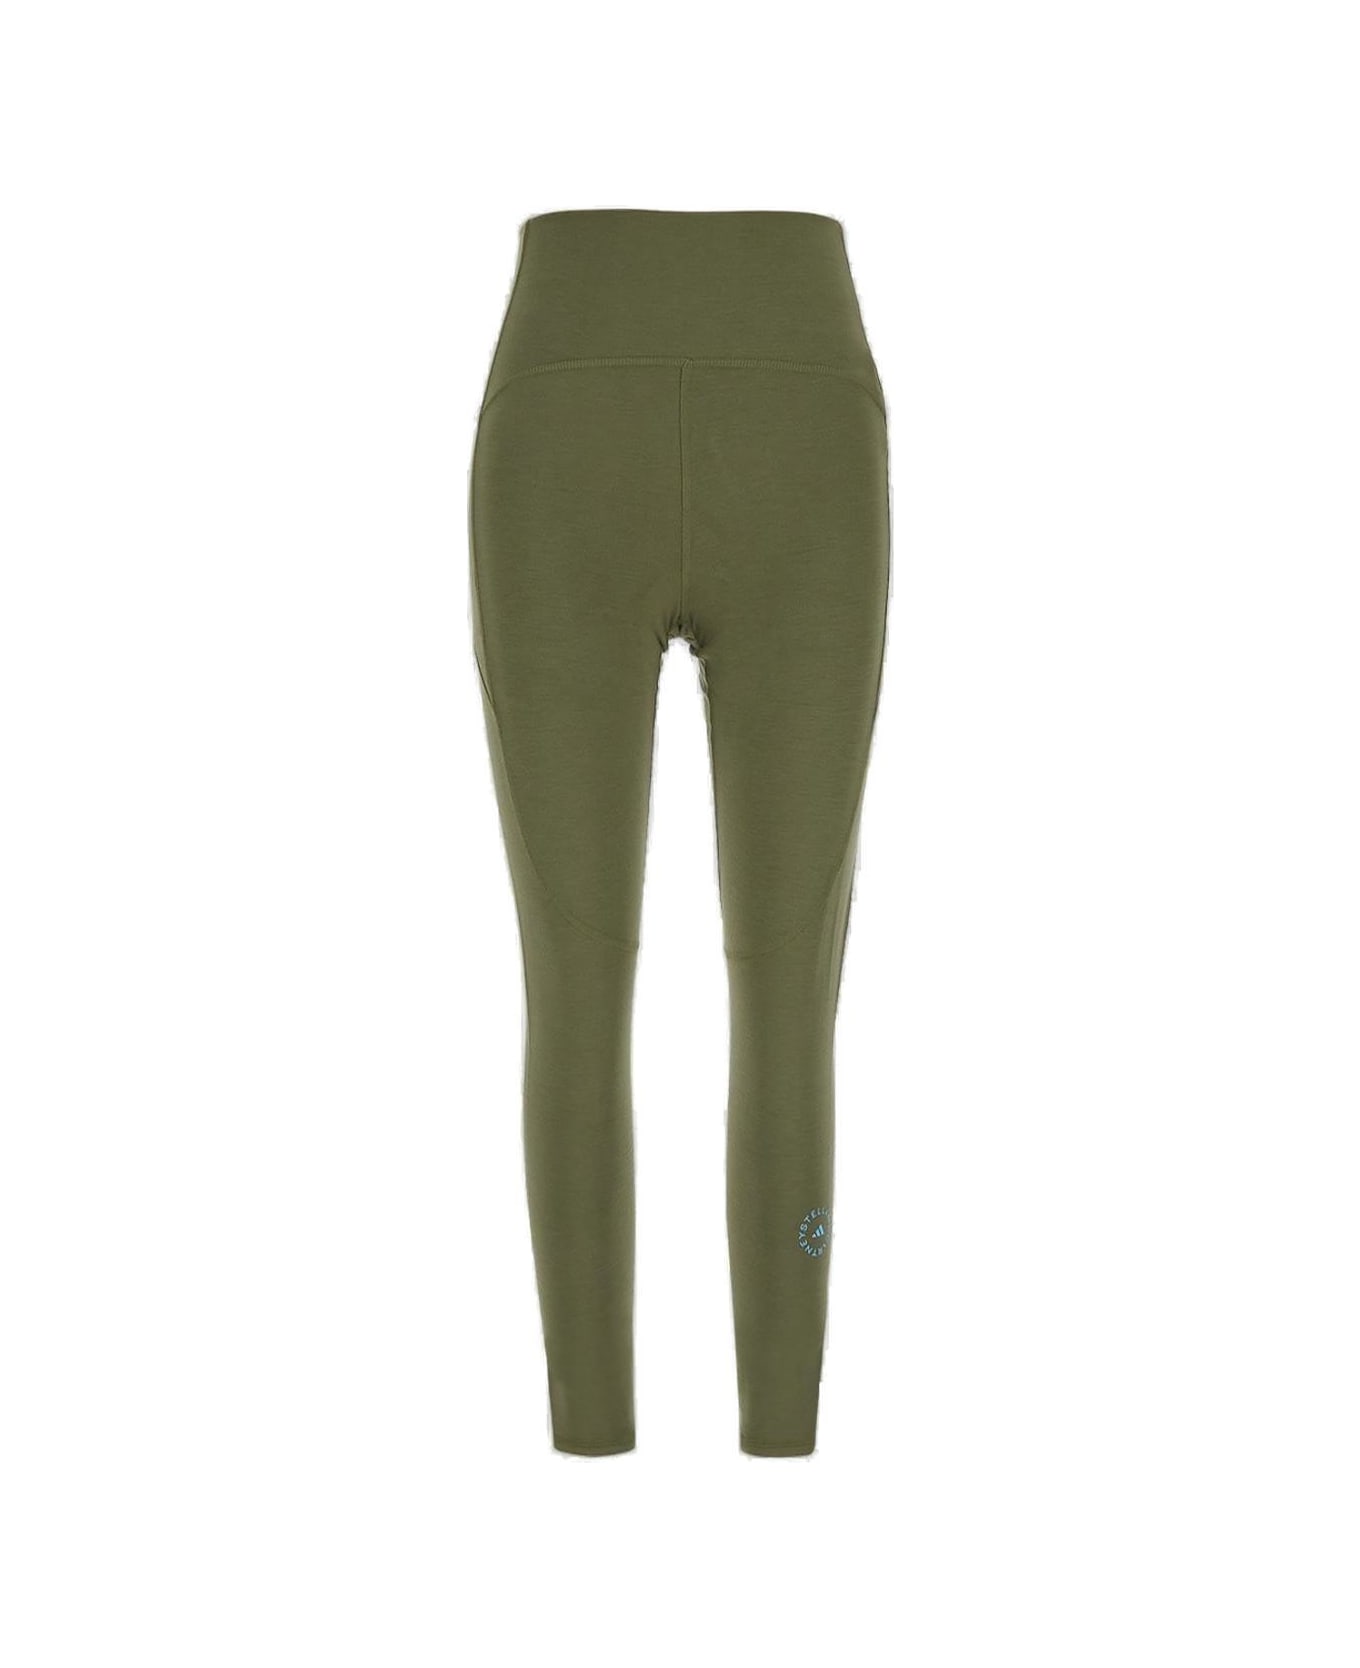 Adidas by Stella McCartney 7/8 Yoga Leggings - Green